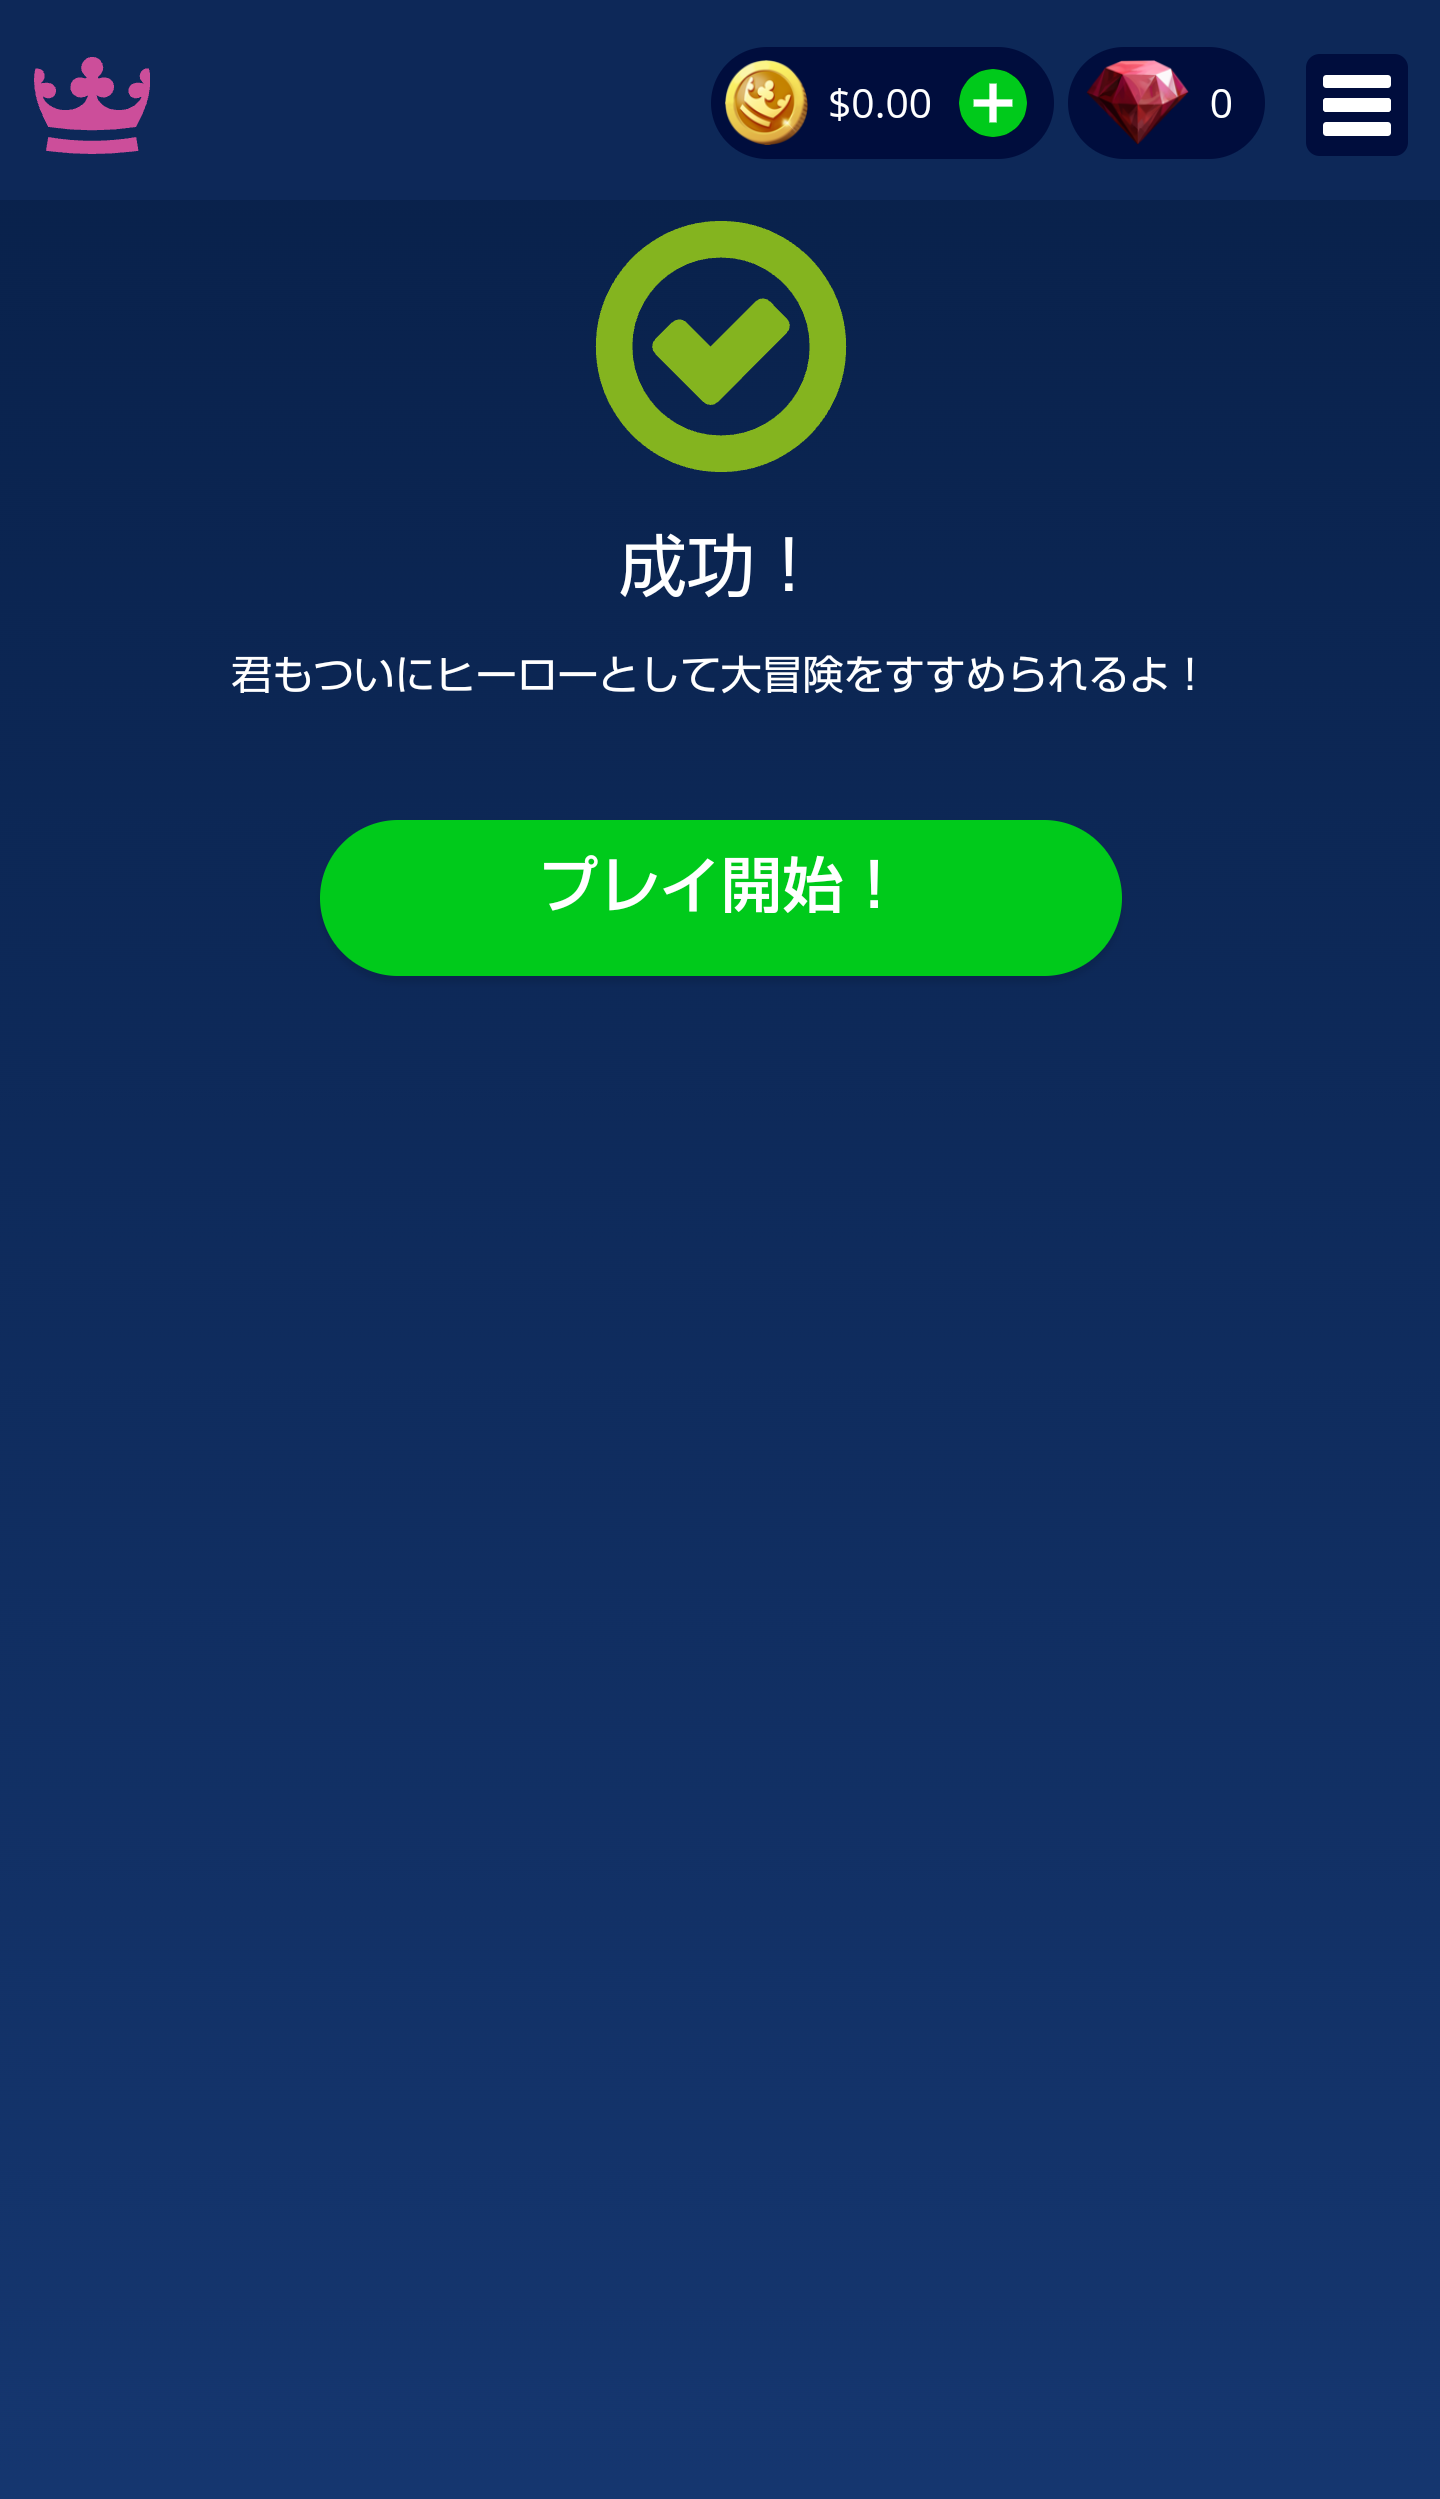 【カジ旅】登録方法5